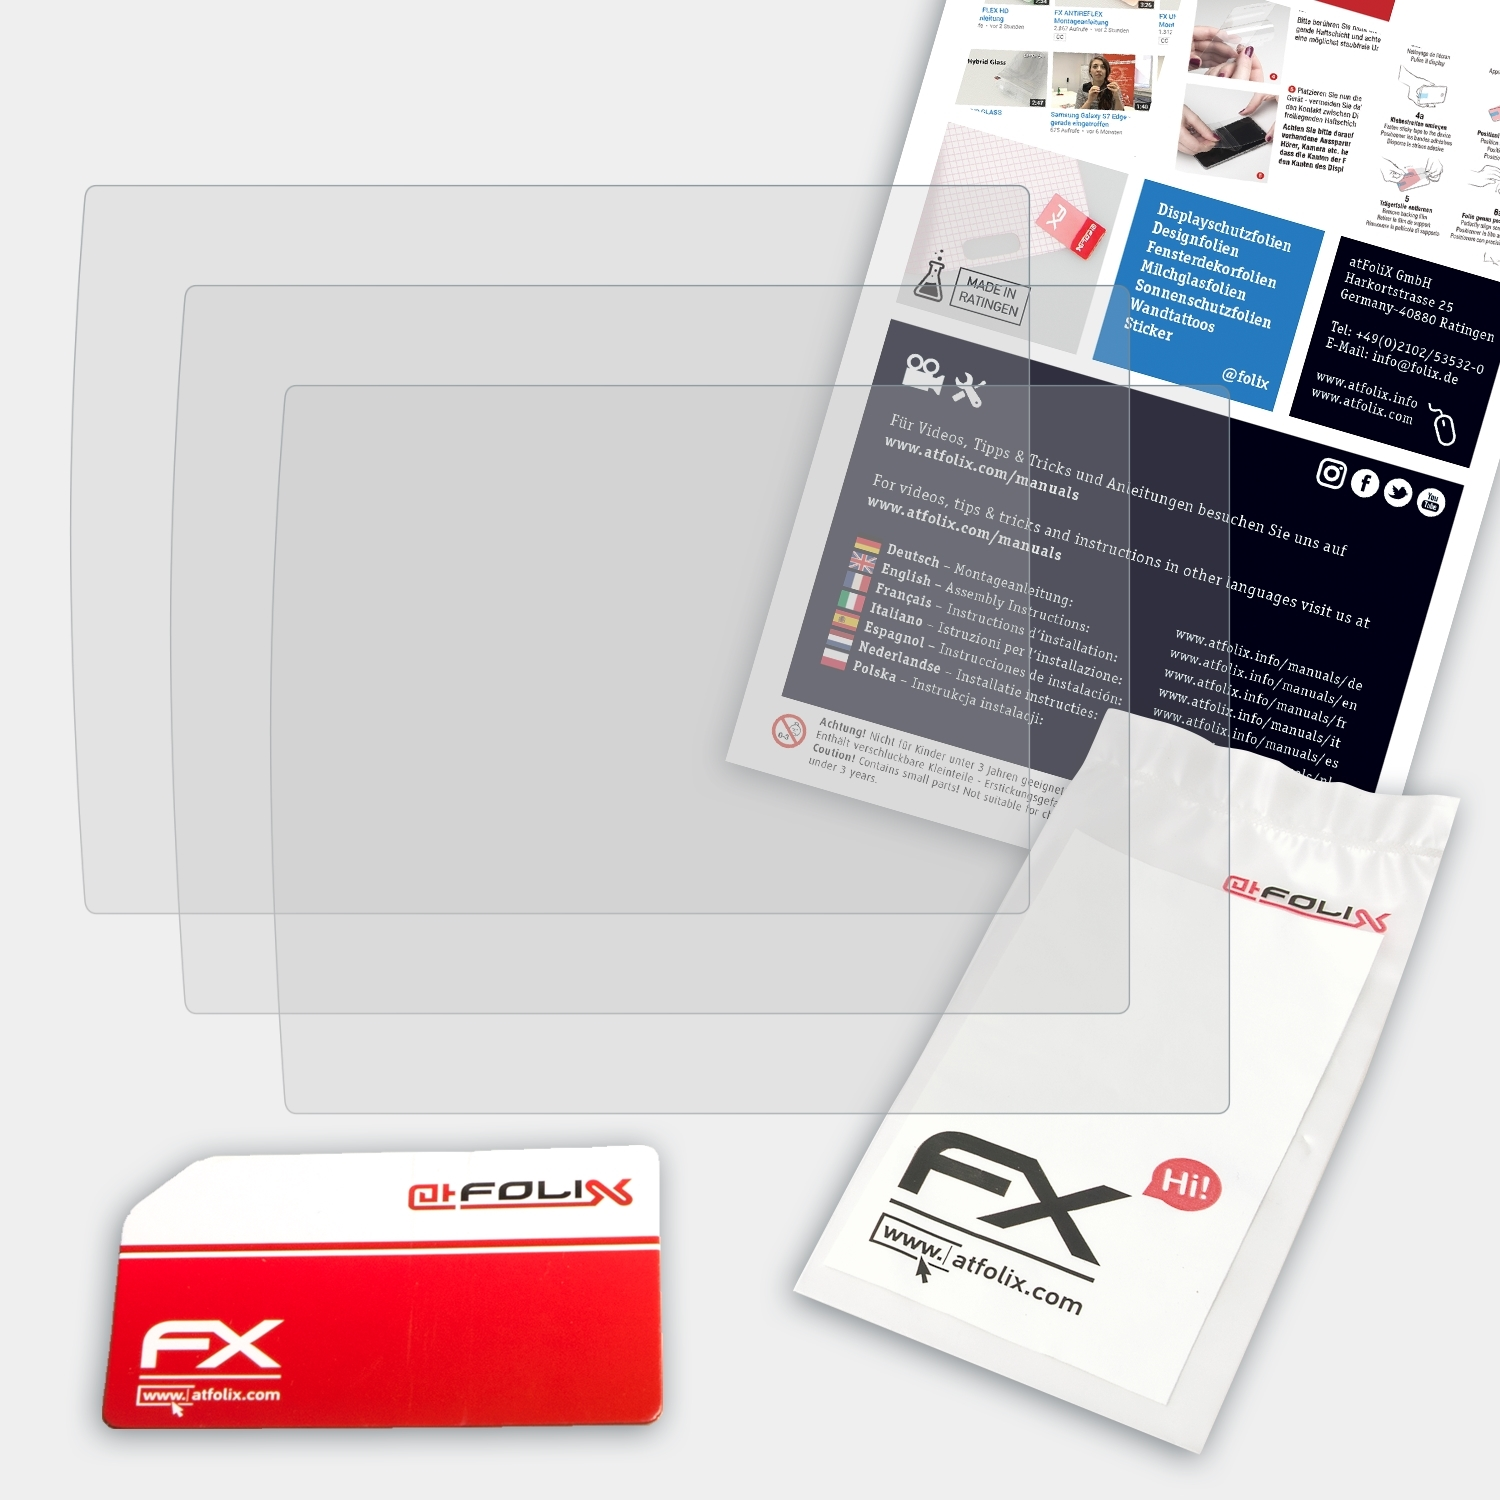 ATFOLIX 3x FX-Antireflex Displayschutz(für Olympus VR-370)